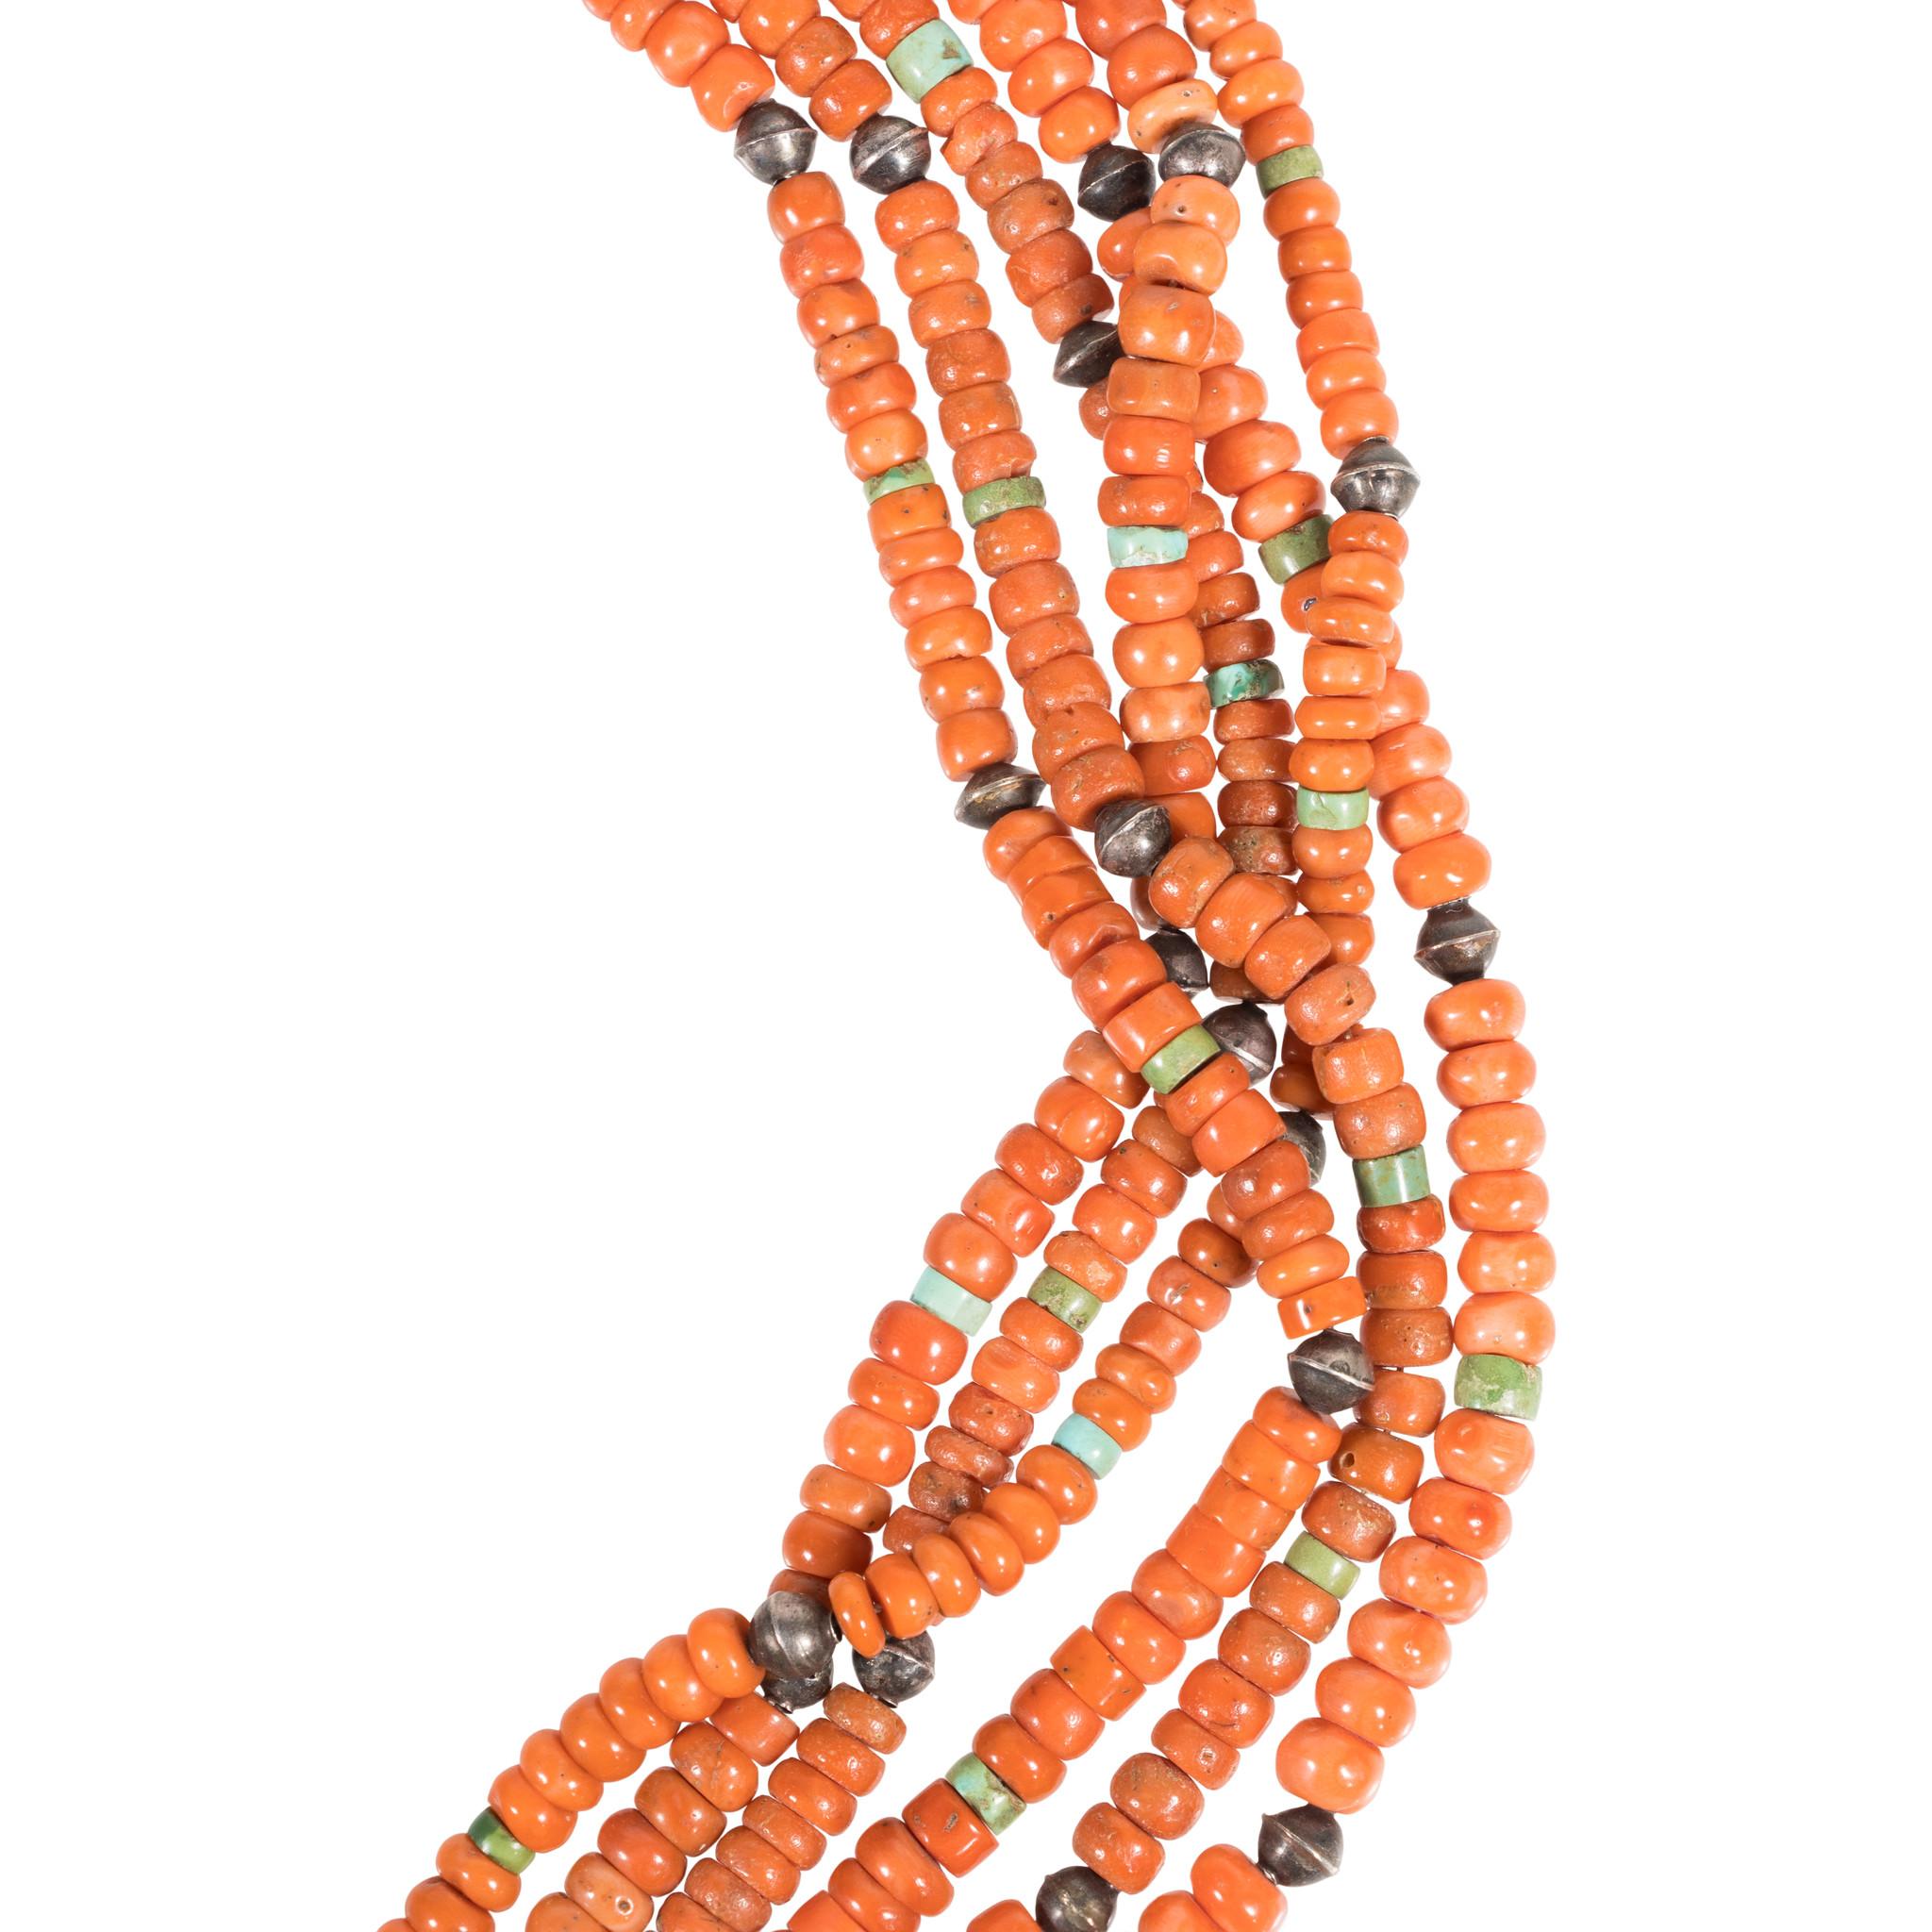 Collier en corail perlé à six brins, de style amérindien Zuni, avec un cordon traditionnel. Enfilé avec des perles de corail graduées, accentuées par des perles de turquoise et d'argent patiné. Le corail est une couleur orange vif. Les perles sont